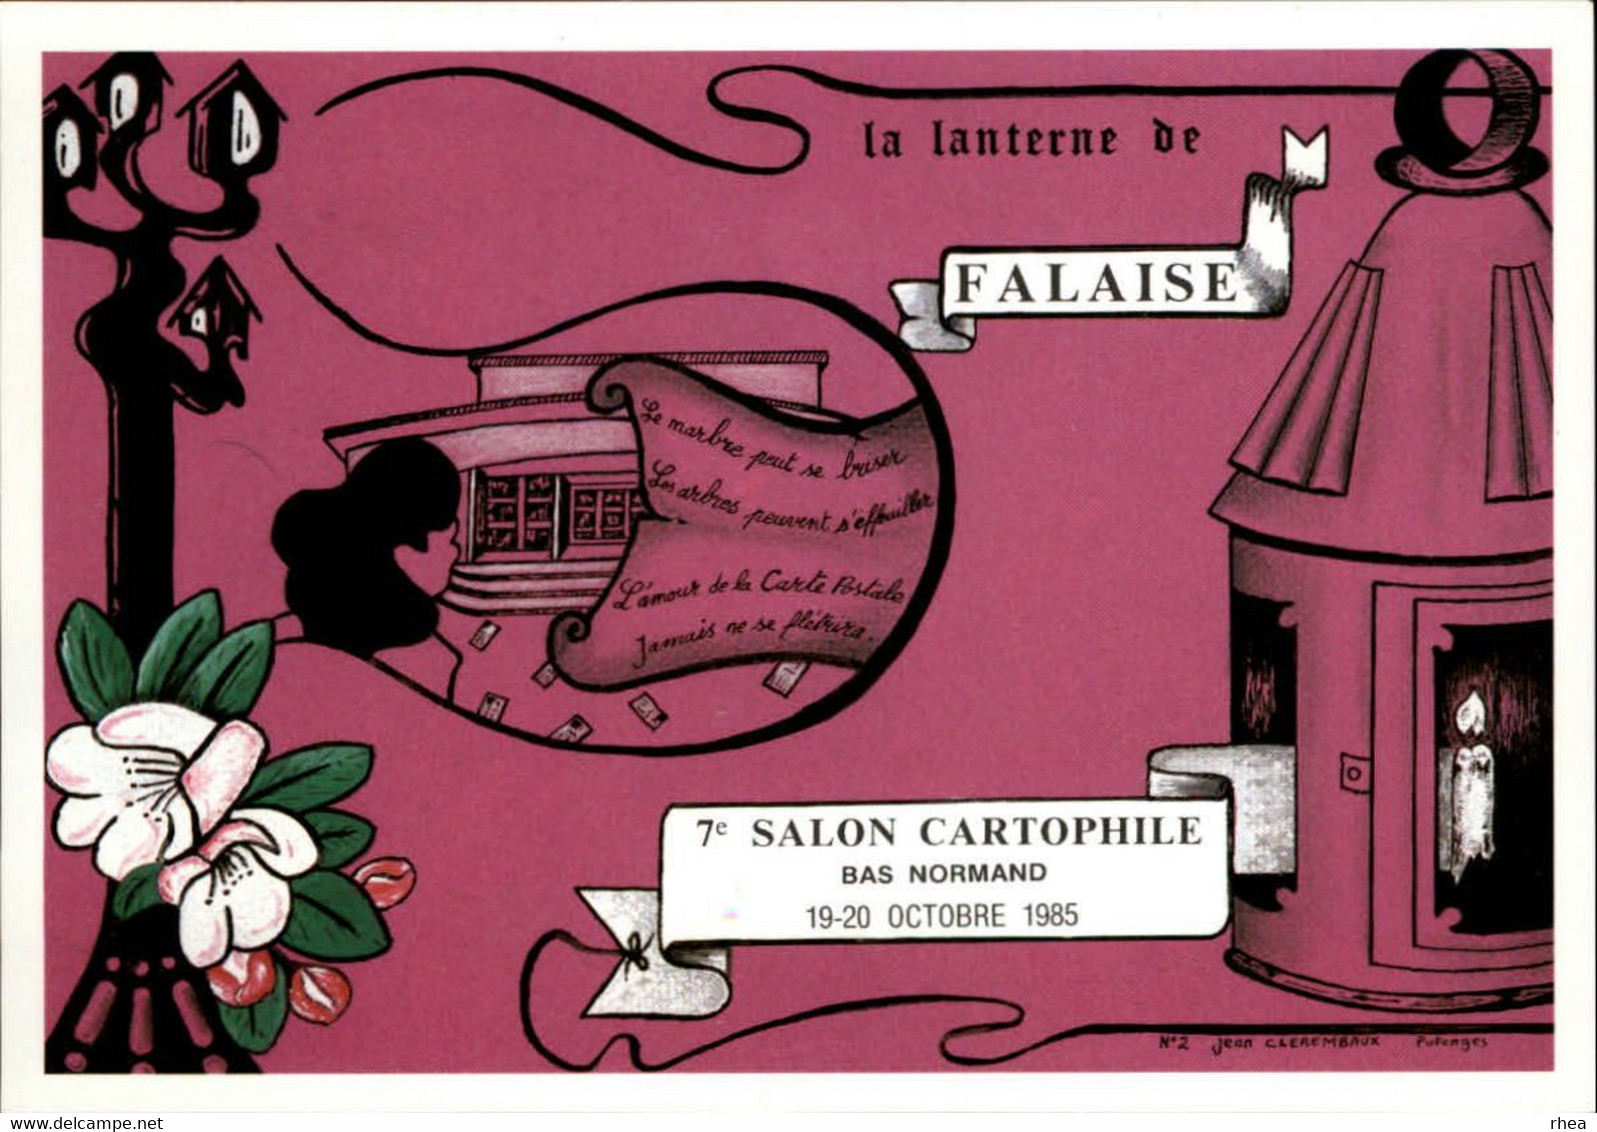 SALONS DE COLLECTIONS - Salon De Cartes Postales Et Du Timbre - 14 FALAISE - 1985 - Dessin De Clérembaux - Bourses & Salons De Collections